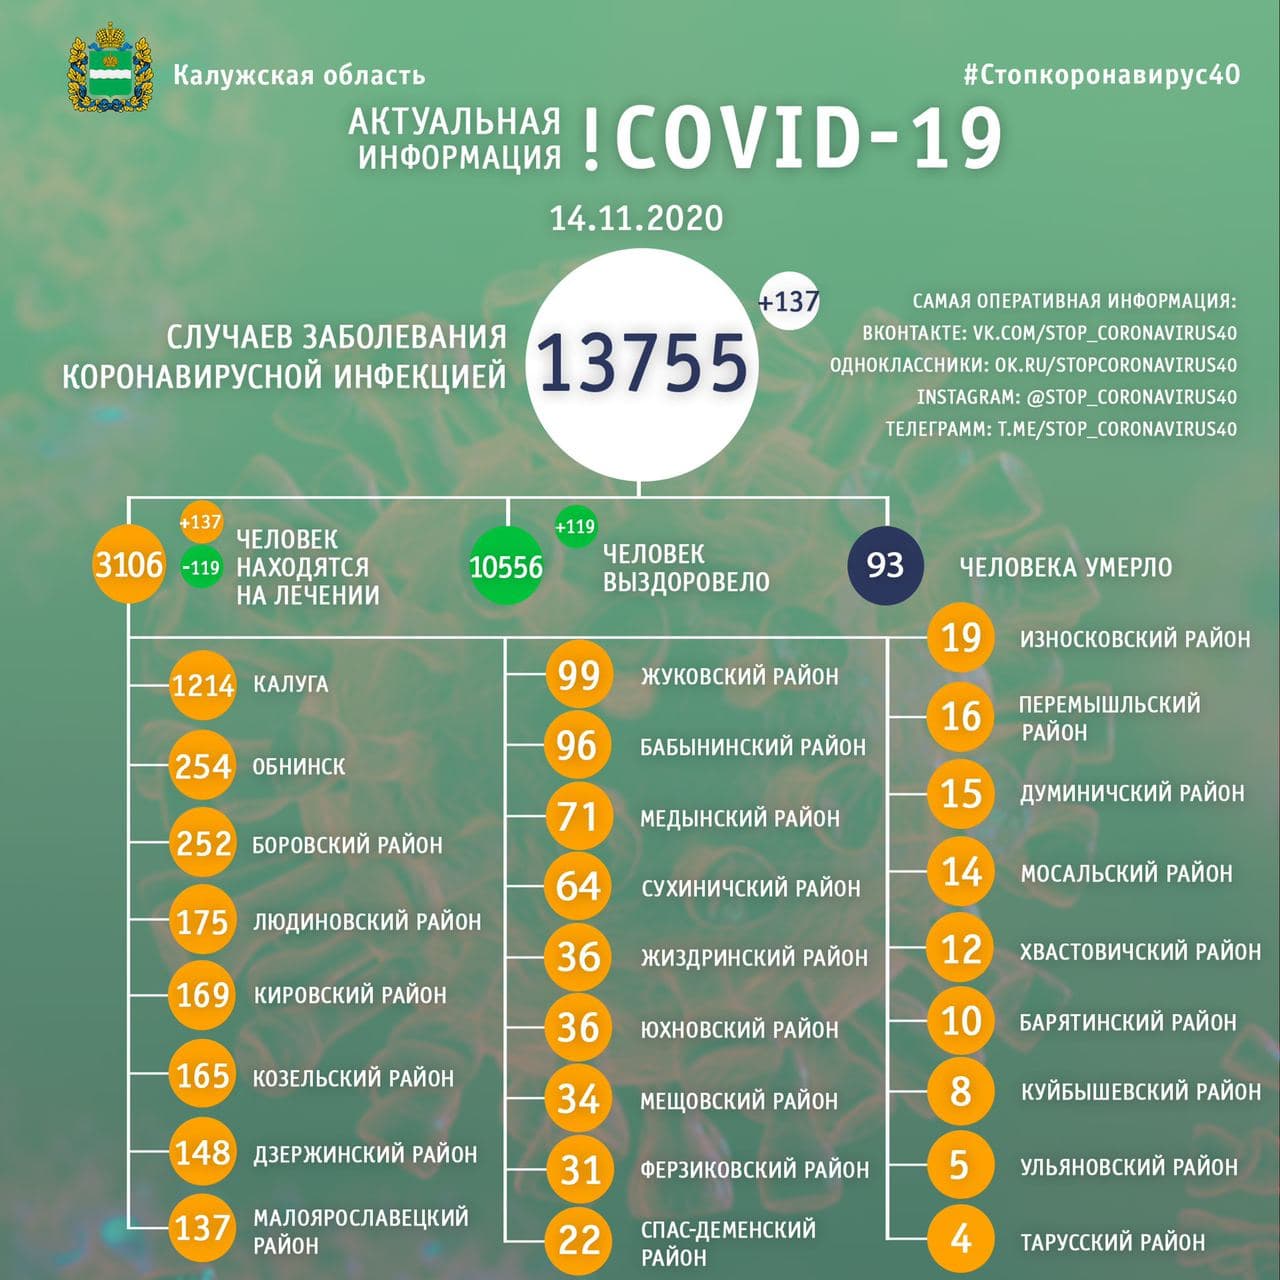 Официальная статистика по коронавирусу в Калужской области на 14 ноября 2020 года.